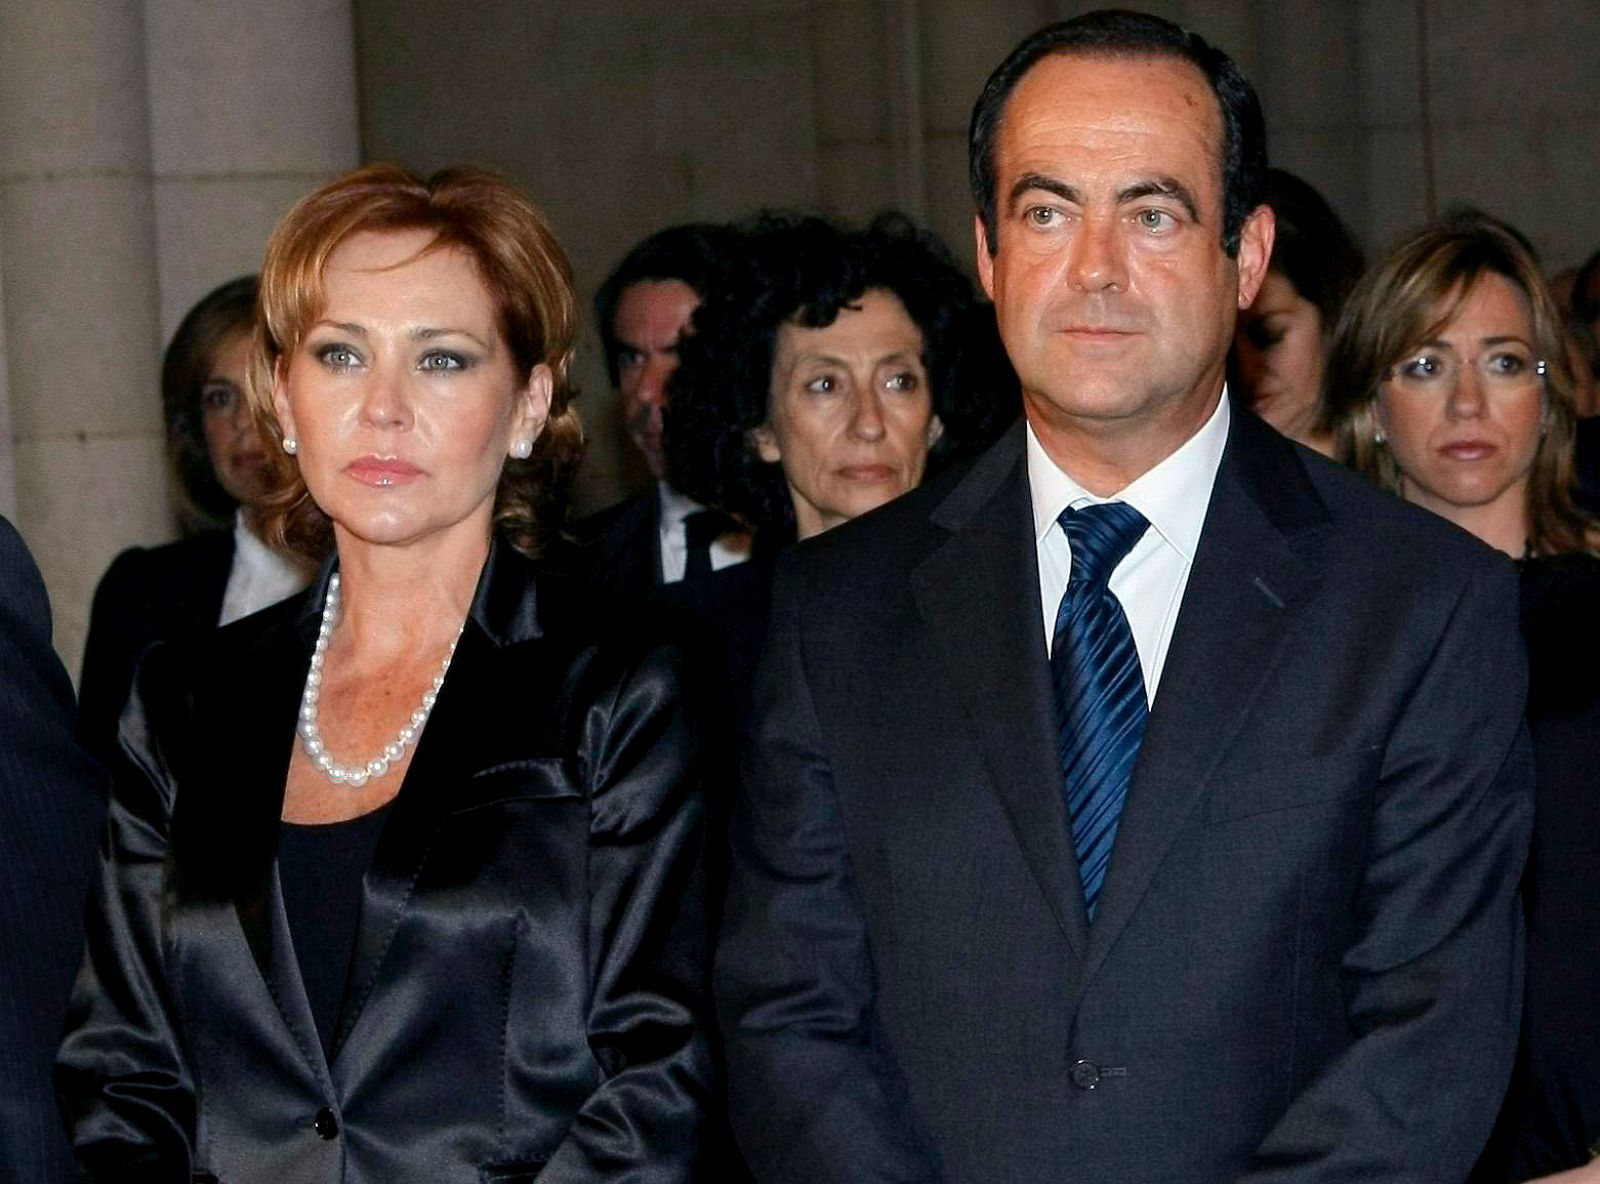 Ana Rodríguez junto a José Bono, durante el funeral por el ex presidente del Gobierno Calvo Sotelo, en 2008.